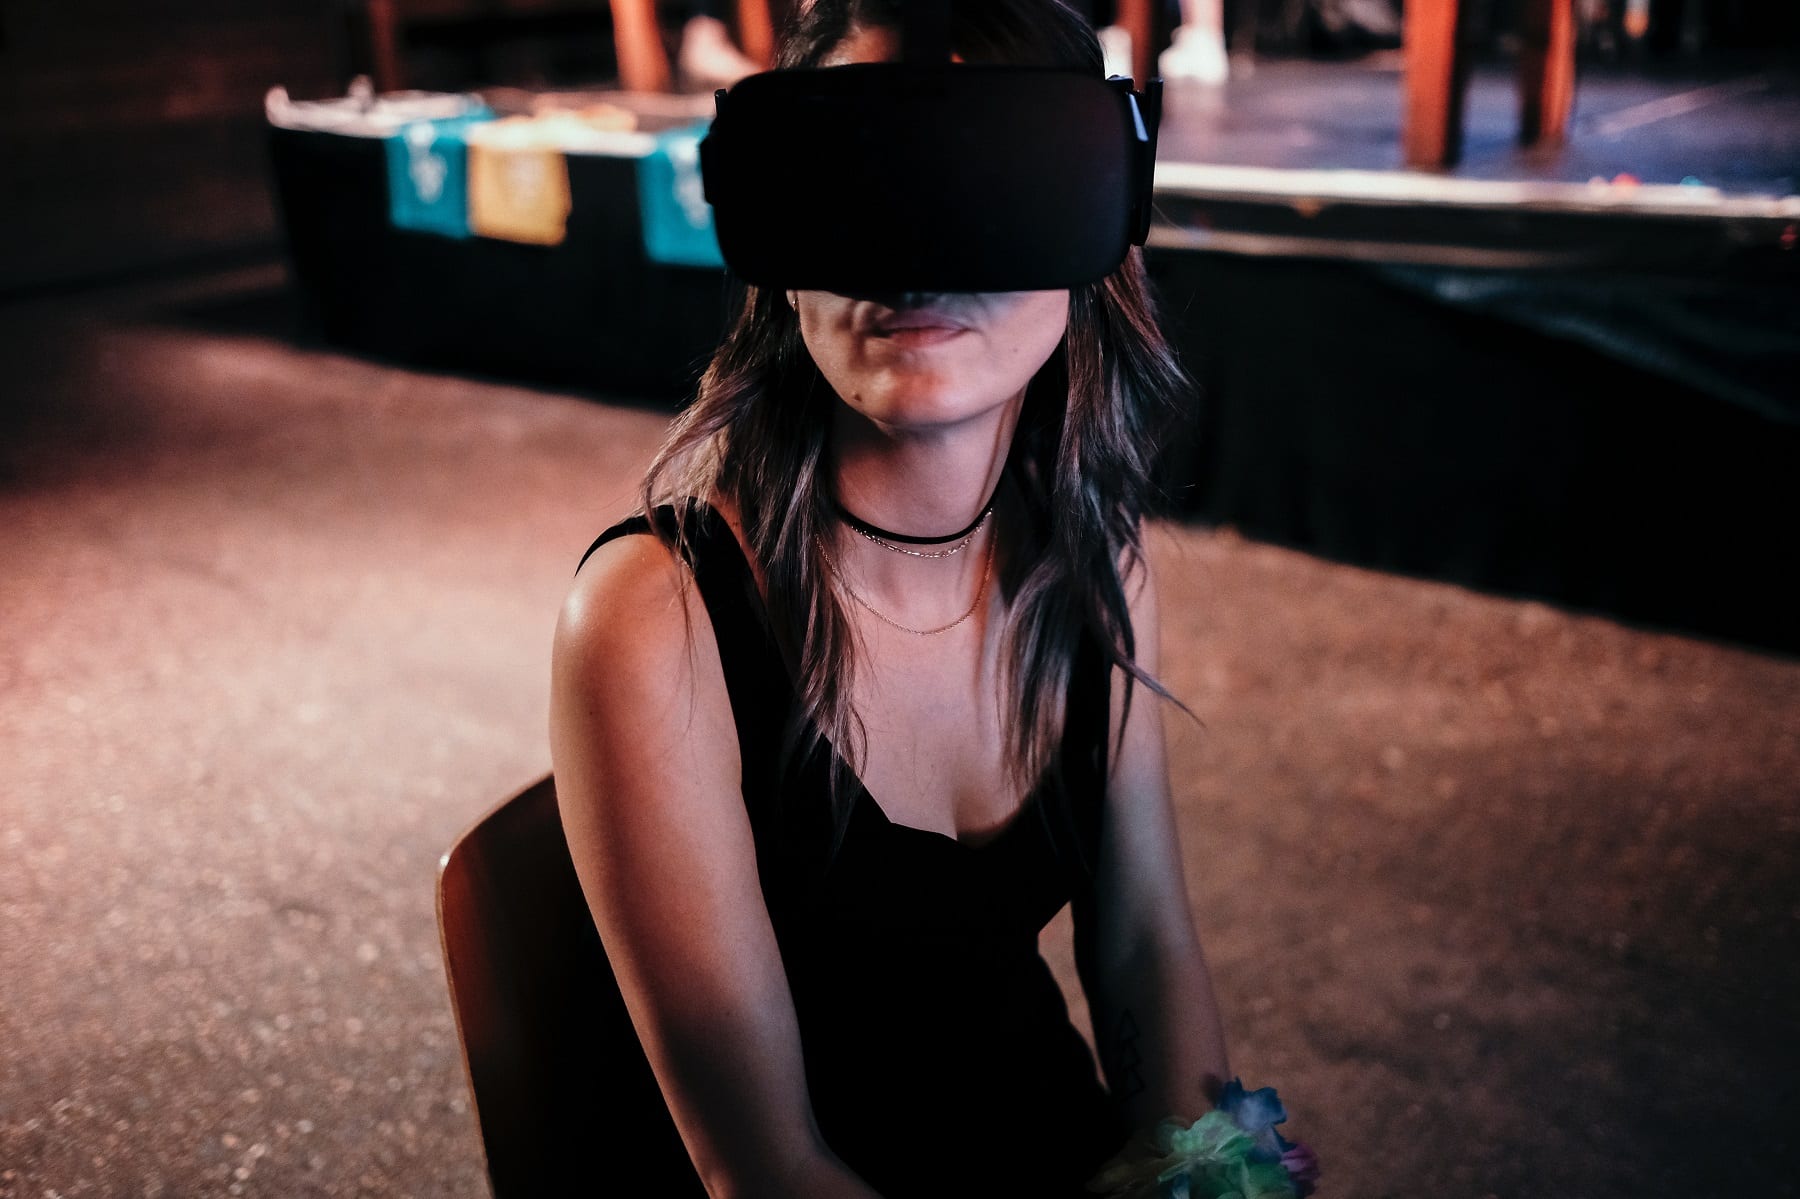 Les casques de réalité virtuelle s’emparent du fitness